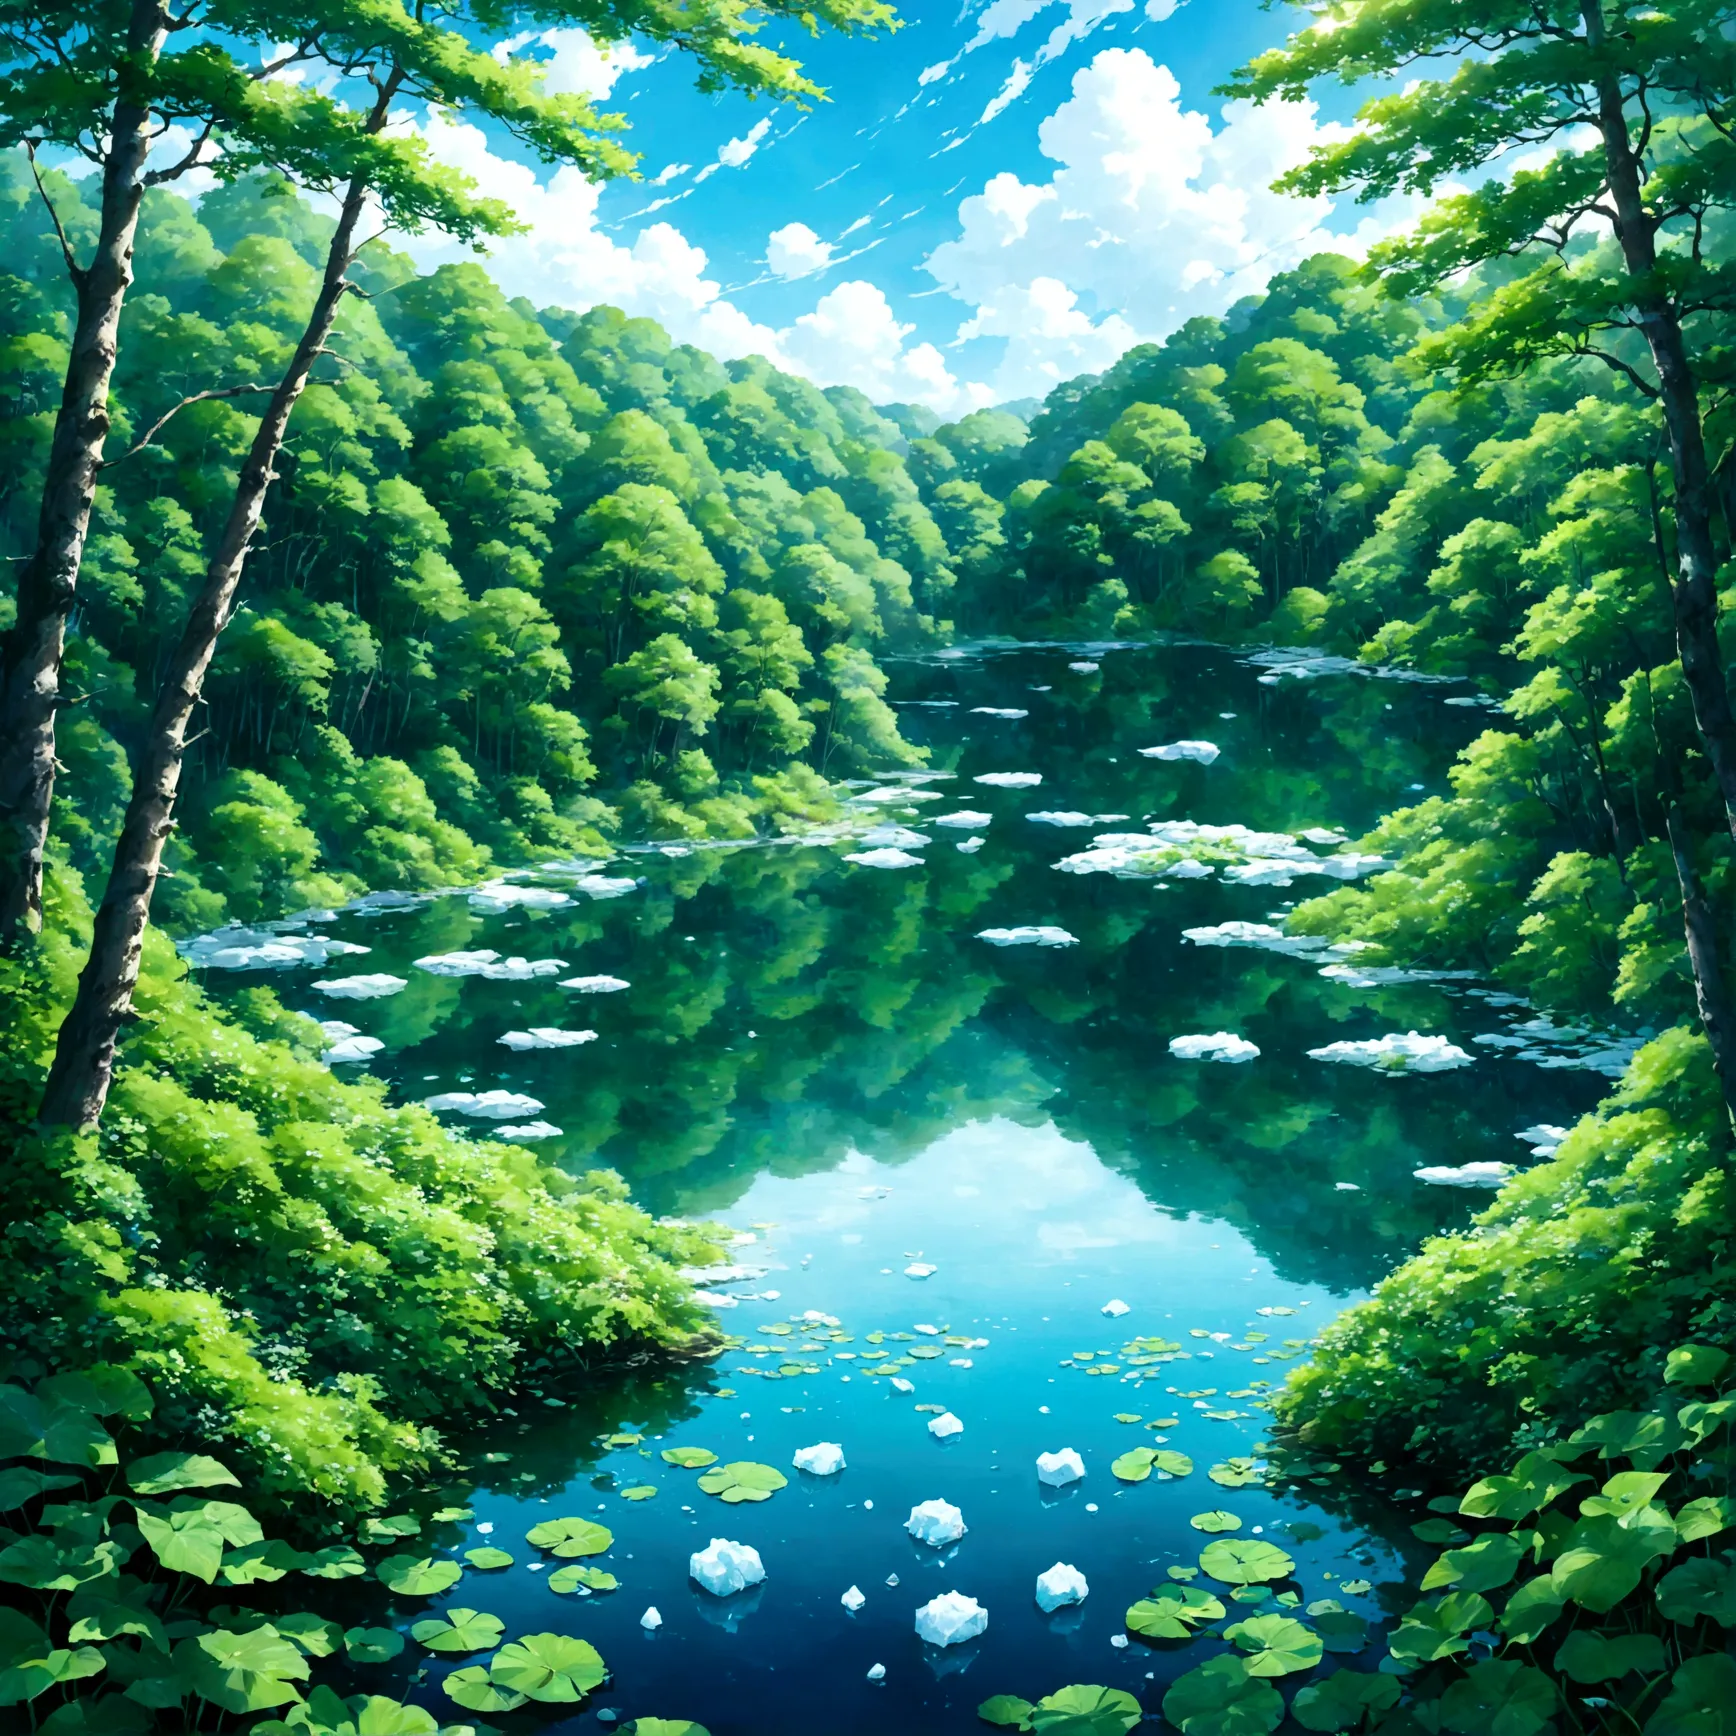 深いforestに囲まれた、静かでmysteriousな青いlake。lake面for、まだ溶け残ったiceが静かに浮かび、It gives off a cool breeze.。lake畔の木々for、Fresh greeneryの葉が芽吹き、Feel ...